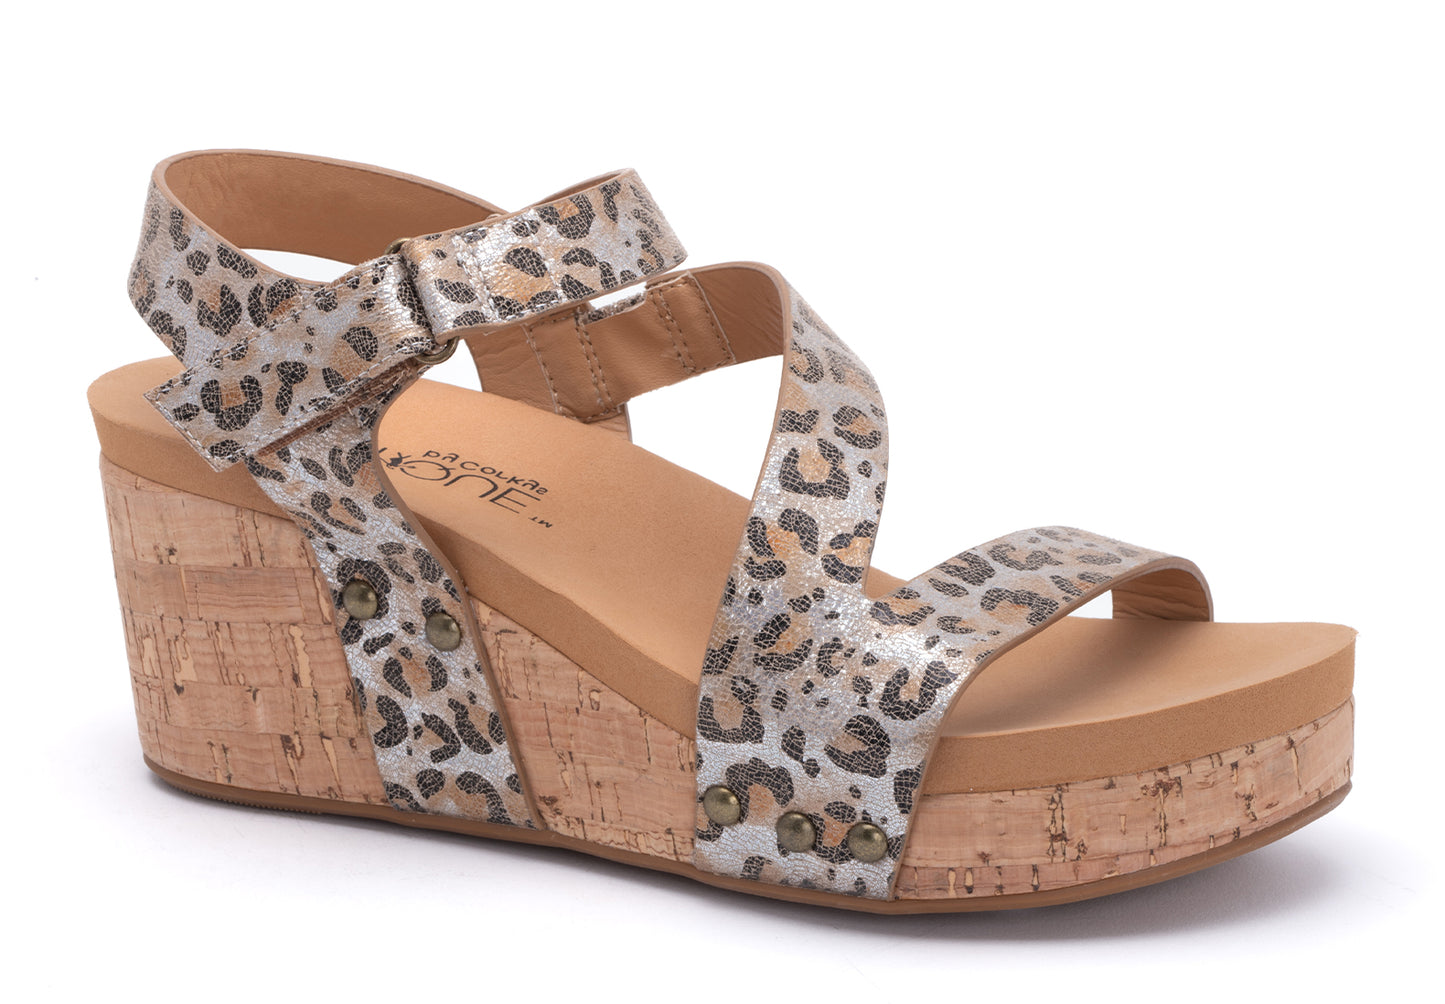 ON SALE! Metallic Leopard Wedge Shoe by Corky's